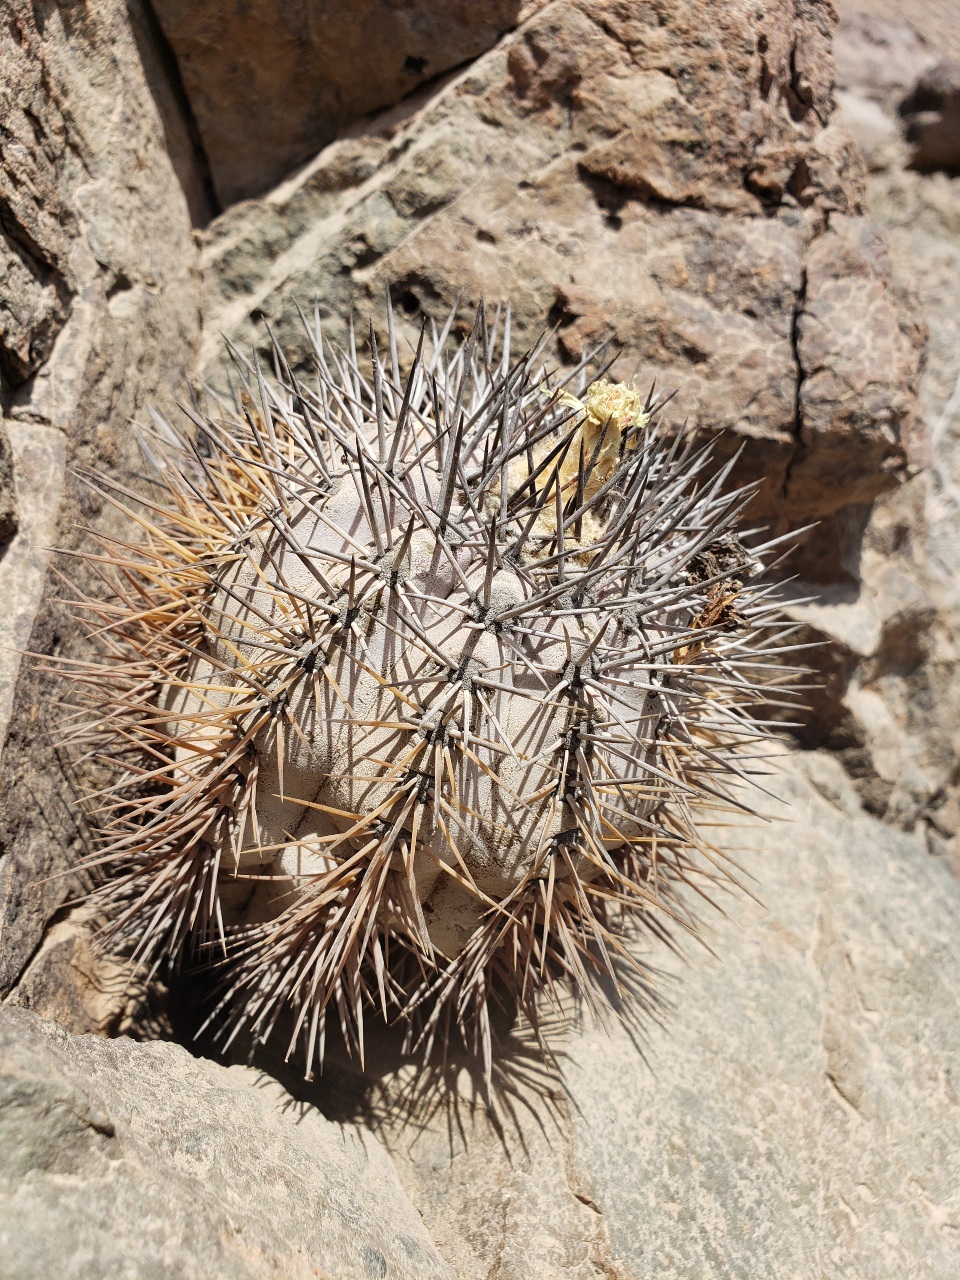 Endangered Copiapoa atacamensis cactus